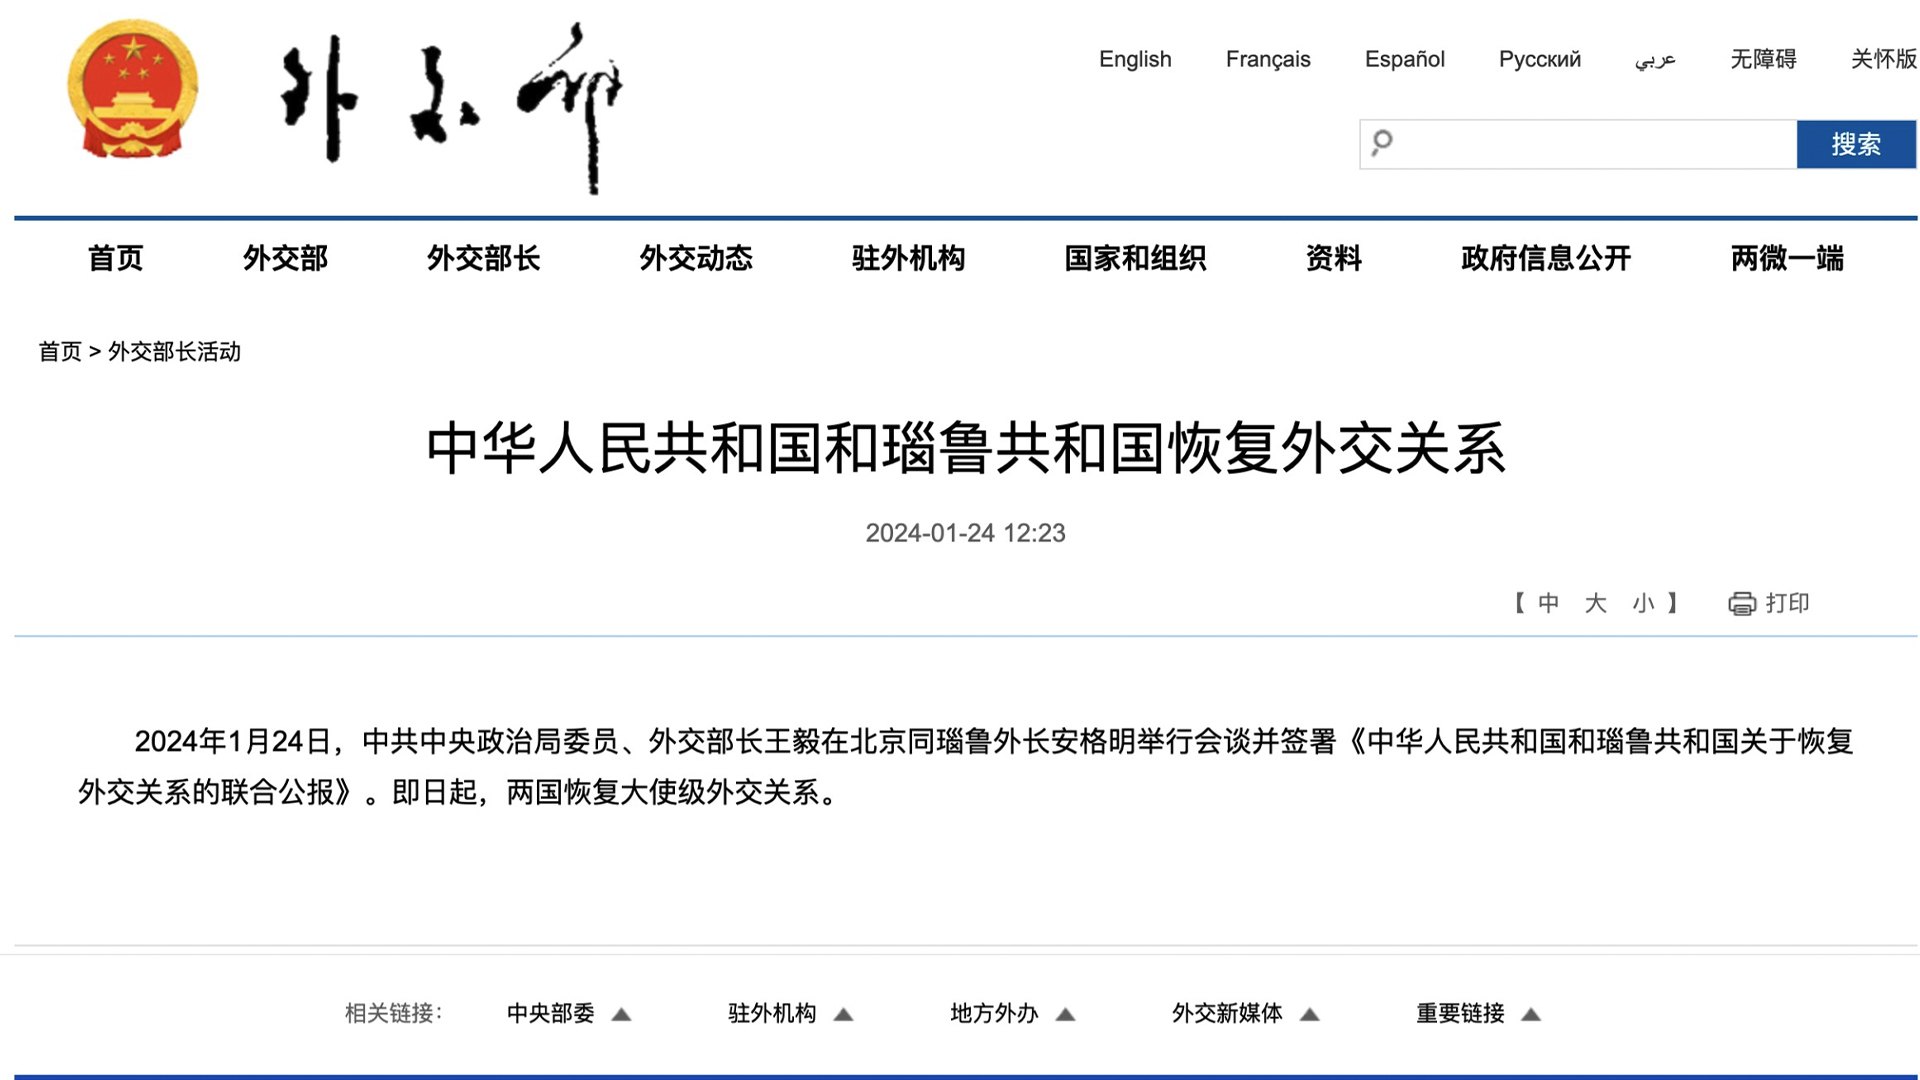 中华人民共和国和瑙鲁共和国恢复外交关系